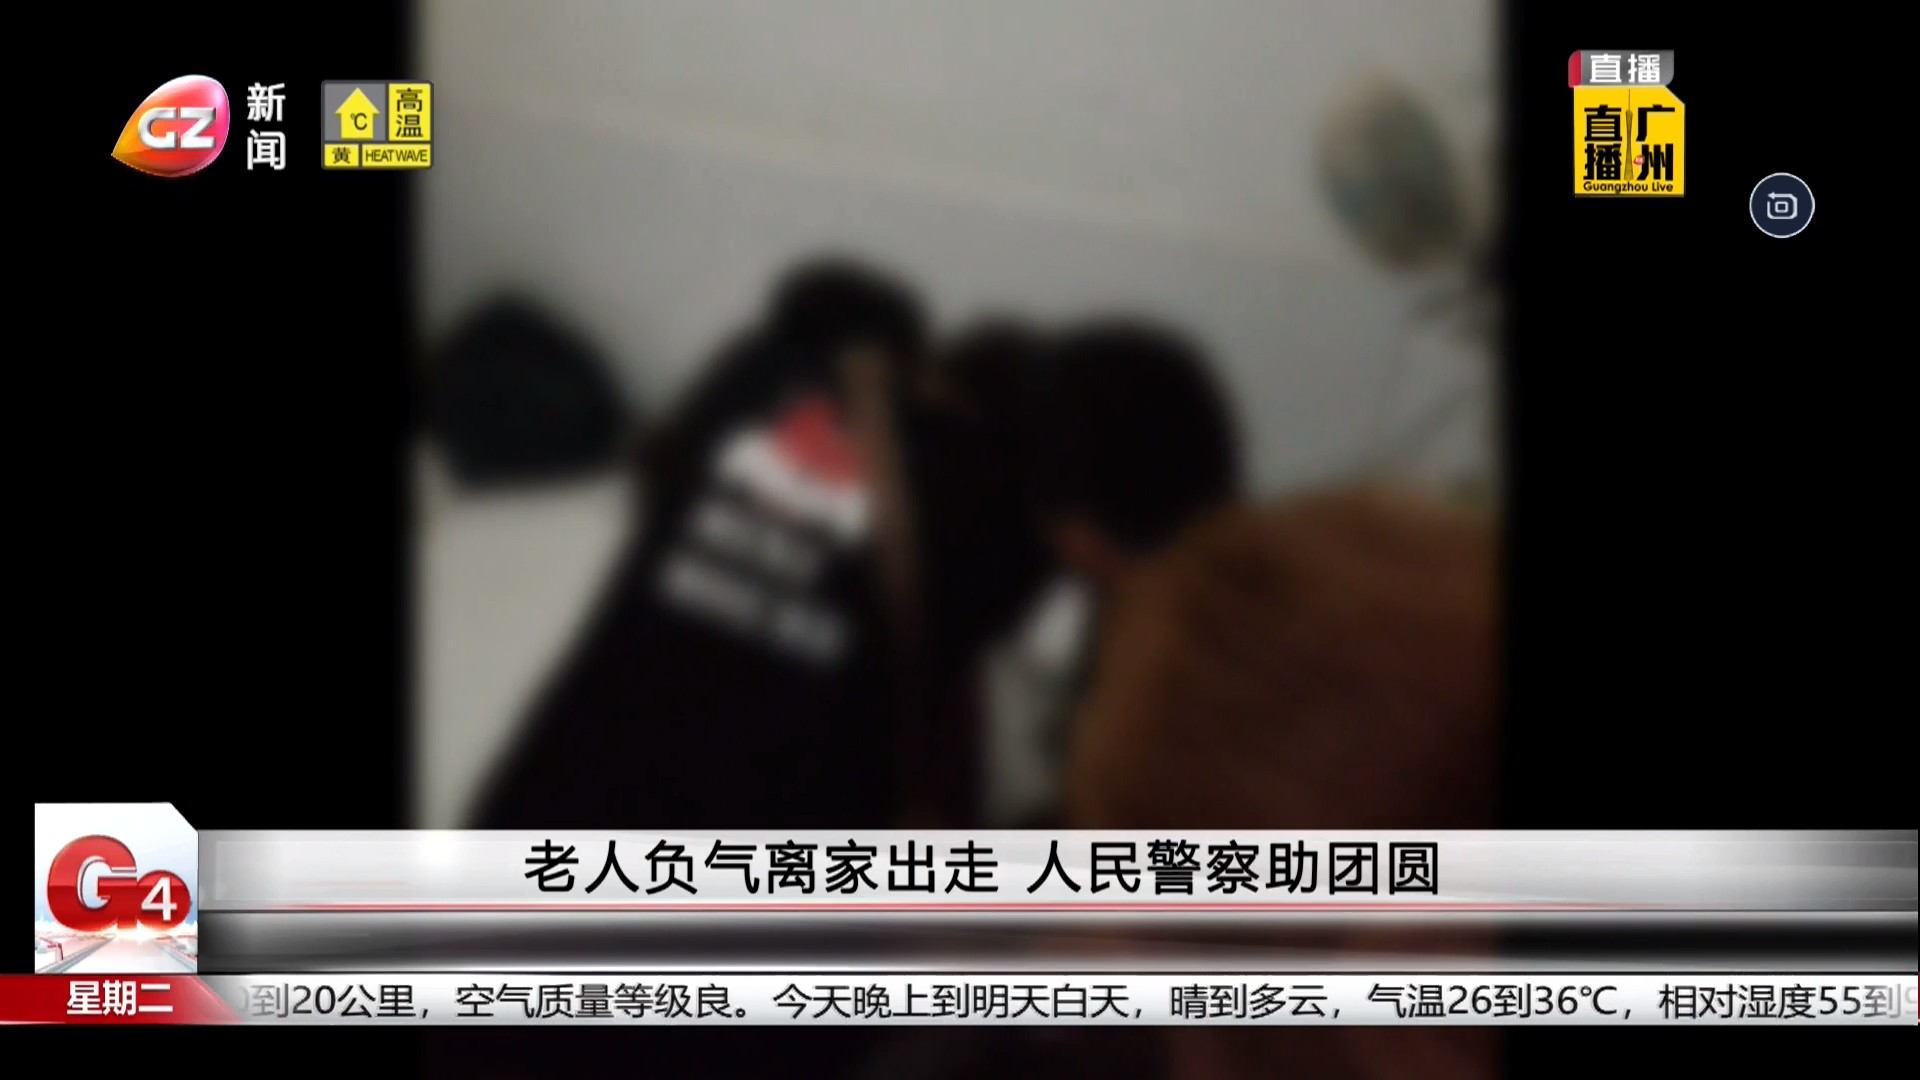 广州台新闻频道 G4出动 老人负气离家出走 人民警察助团圆